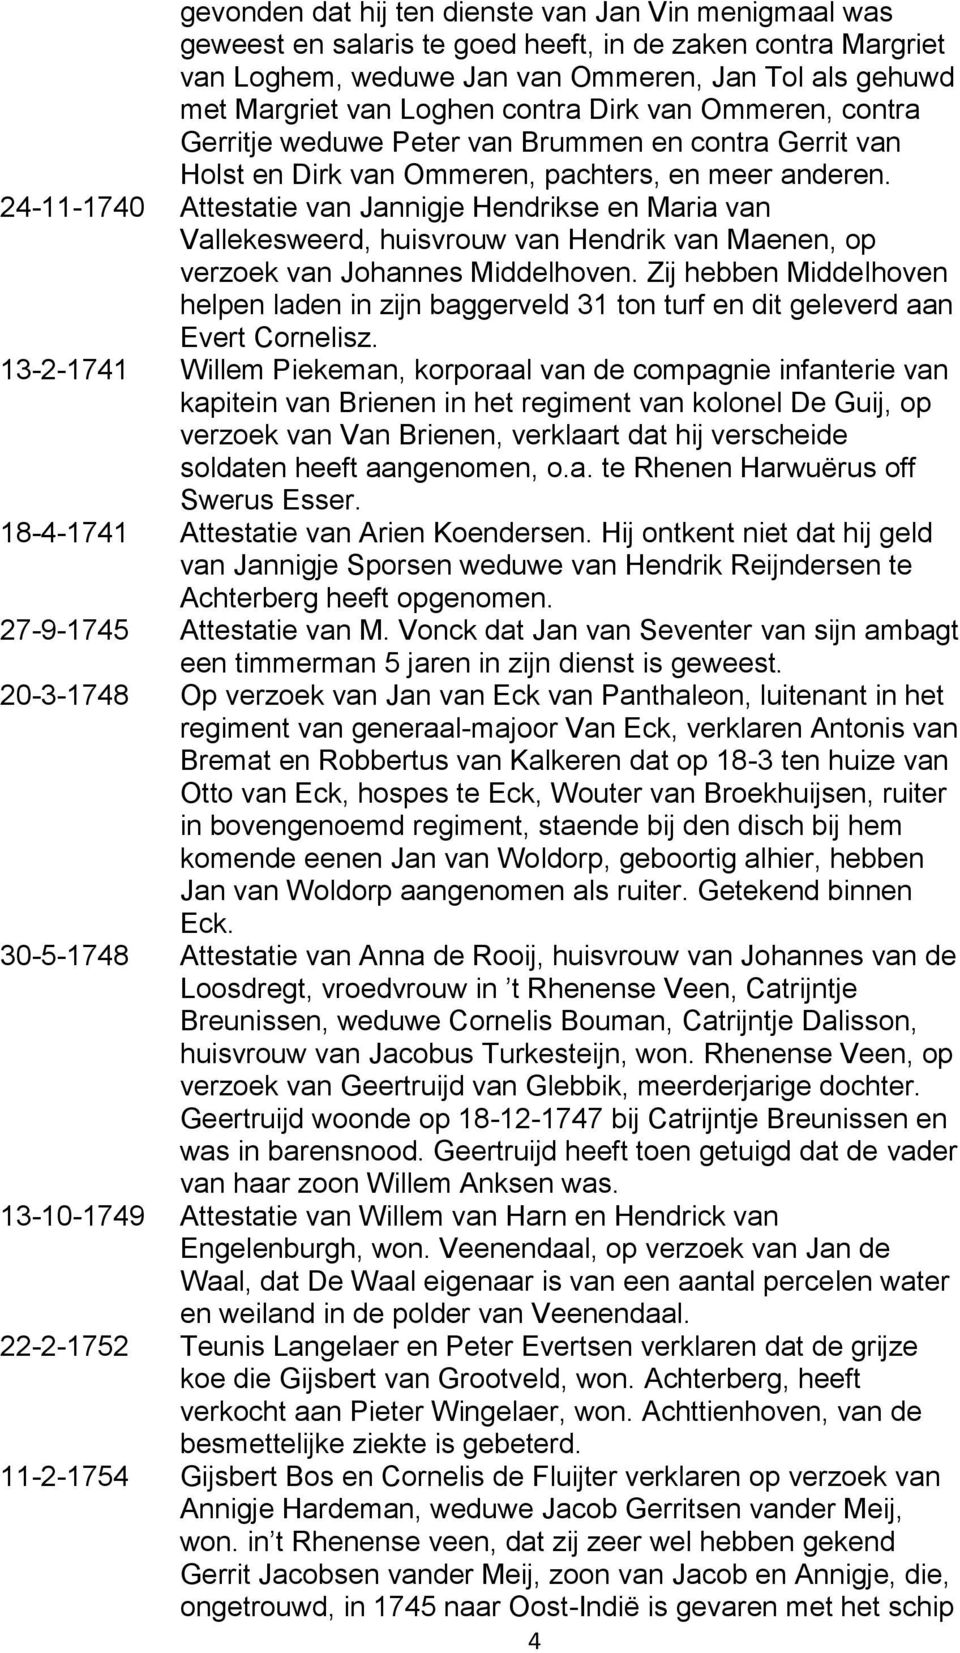 24-11-1740 Attestatie van Jannigje Hendrikse en Maria van Vallekesweerd, huisvrouw van Hendrik van Maenen, op verzoek van Johannes Middelhoven.